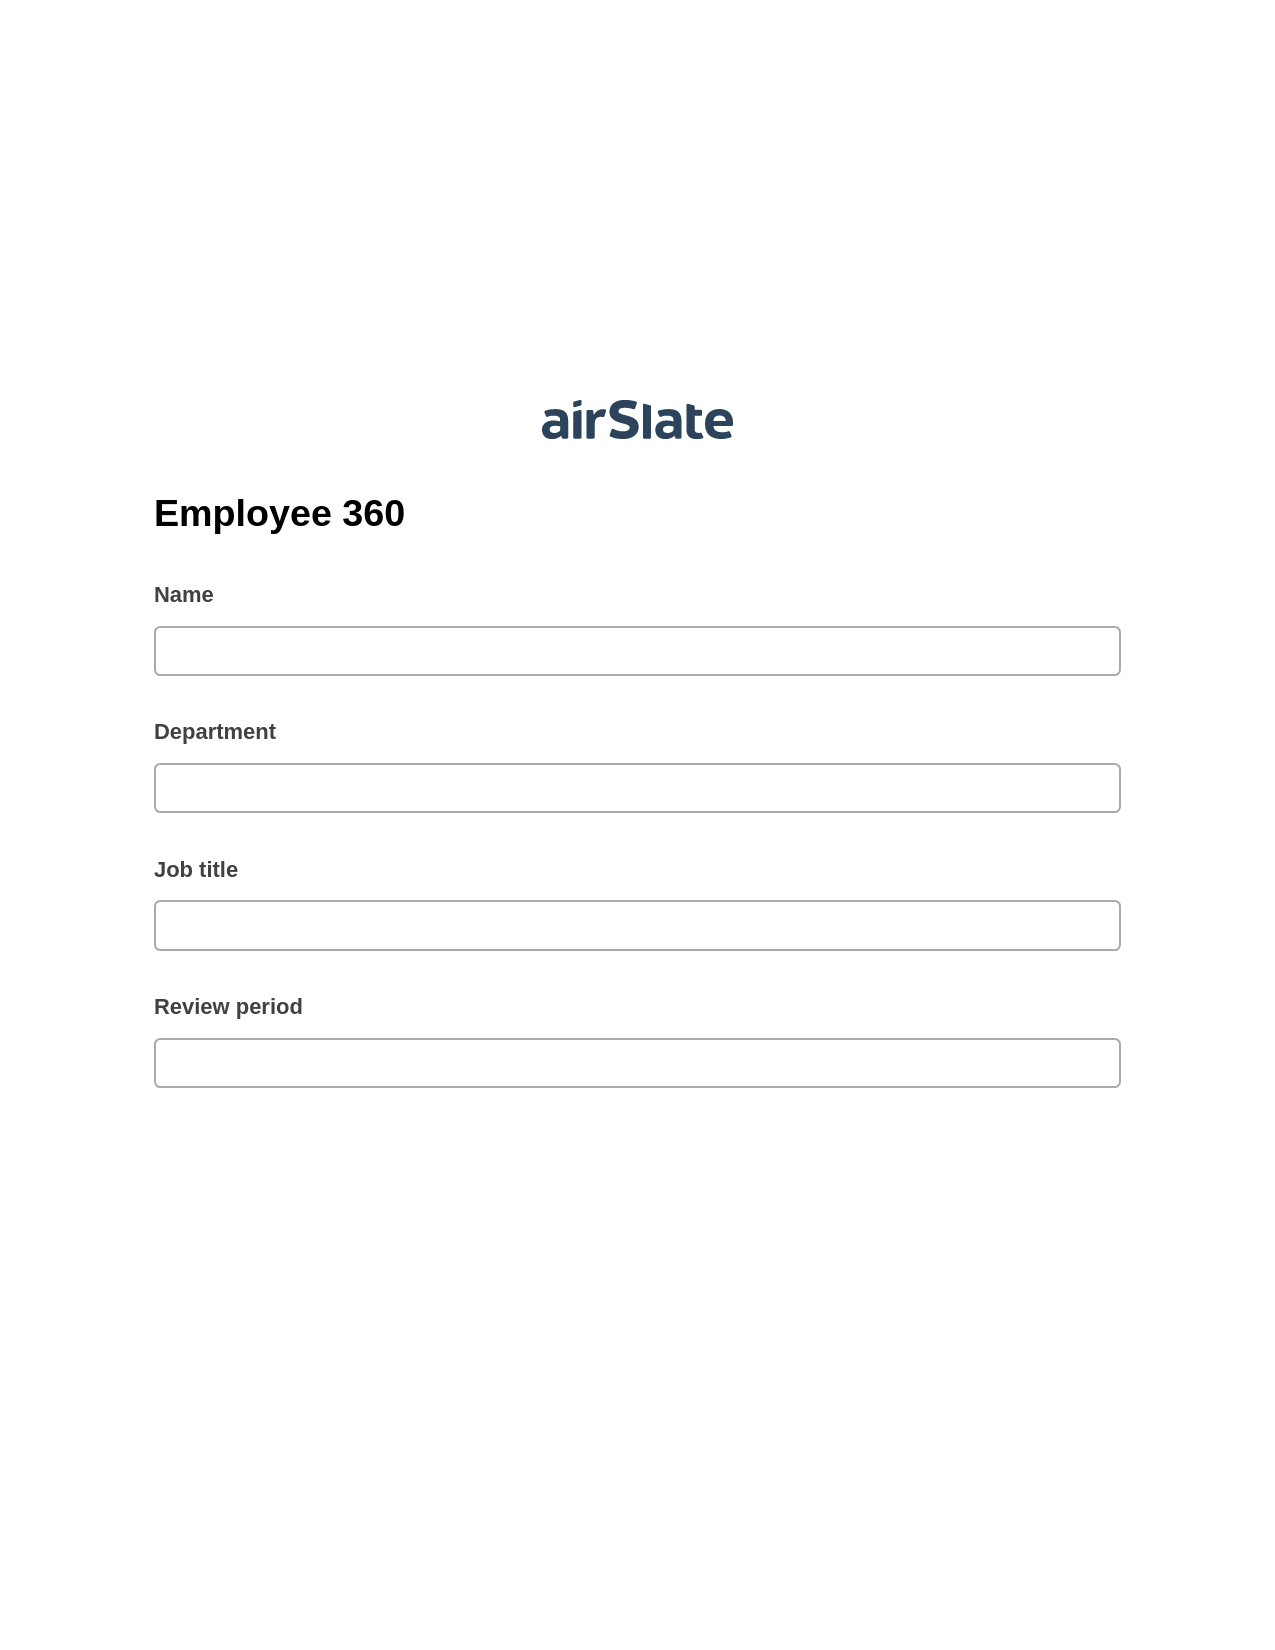 Multirole Employee 360 Pre-fill from another Slate Bot, Invoke Salesforce Process Bot, Webhook Postfinish Bot